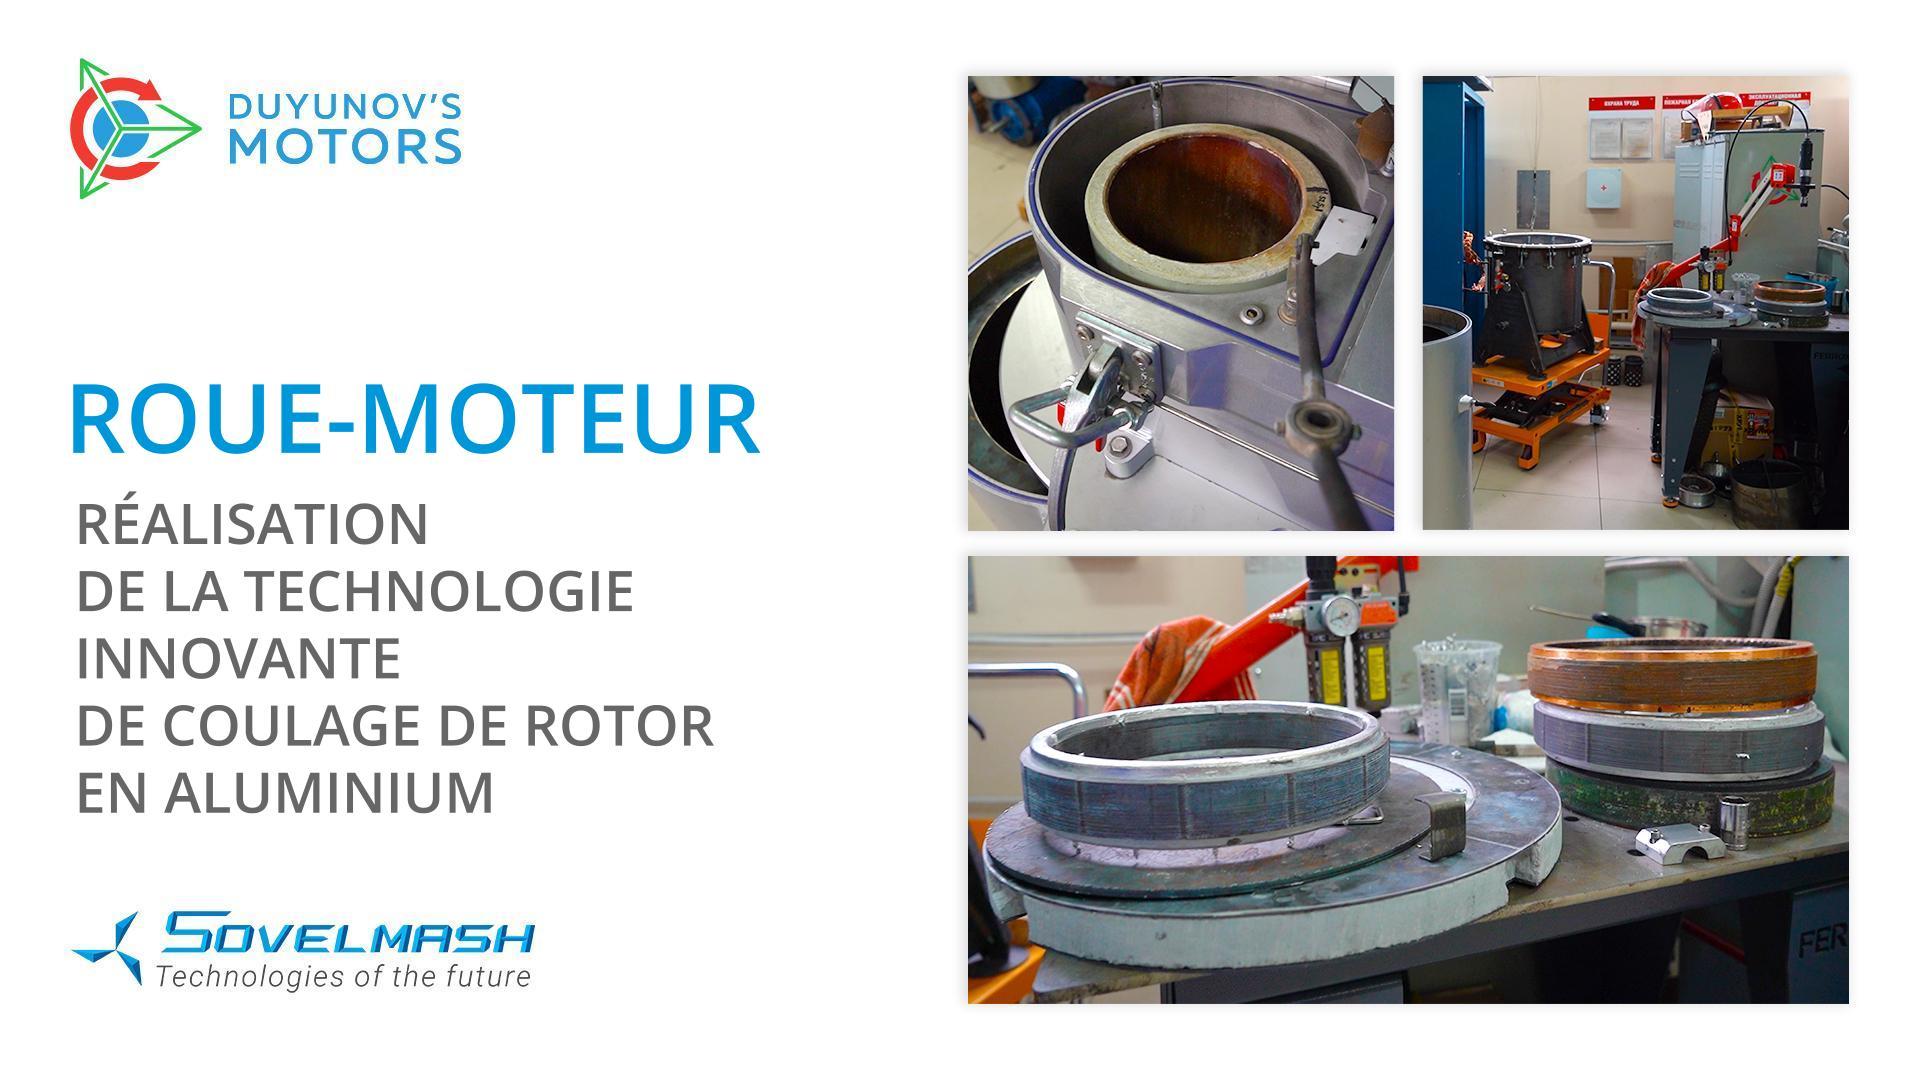 Roue-moteur : réalisation de la technologie innovante de coulage de rotor en aluminium